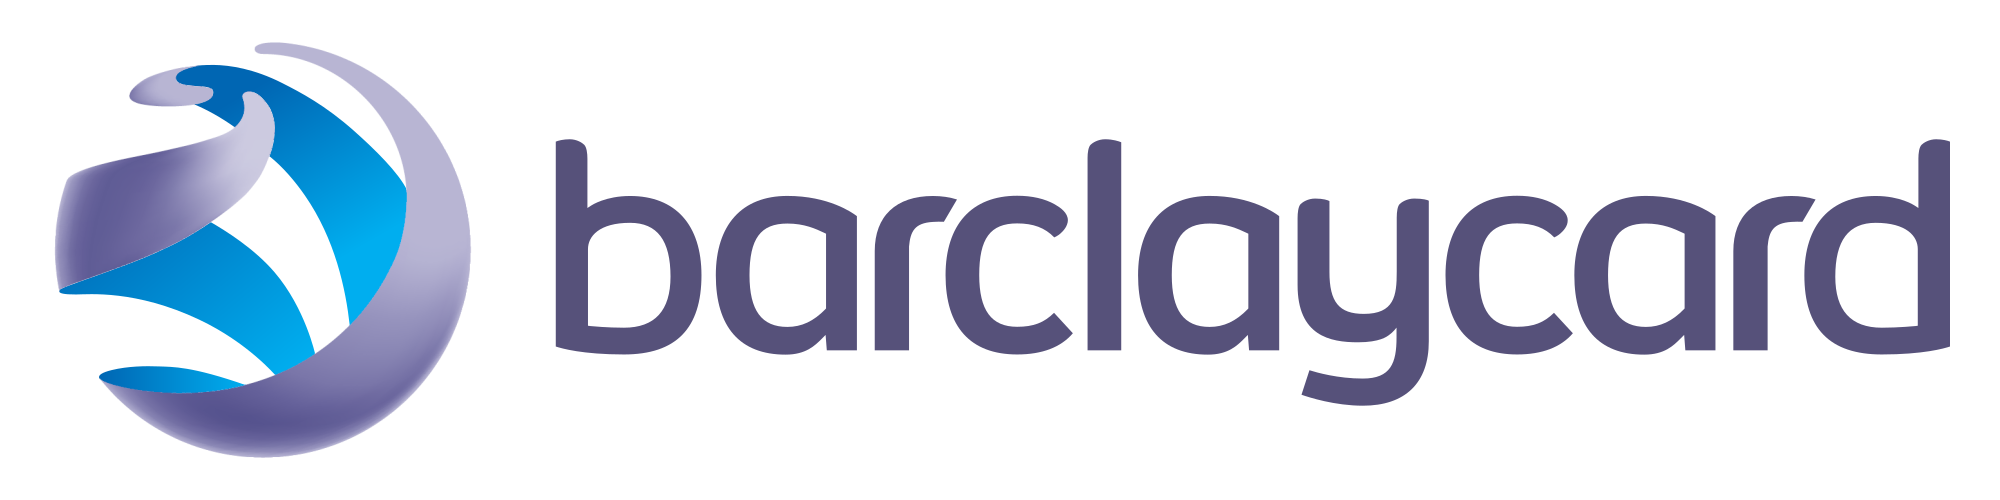 Logo Barclaycard